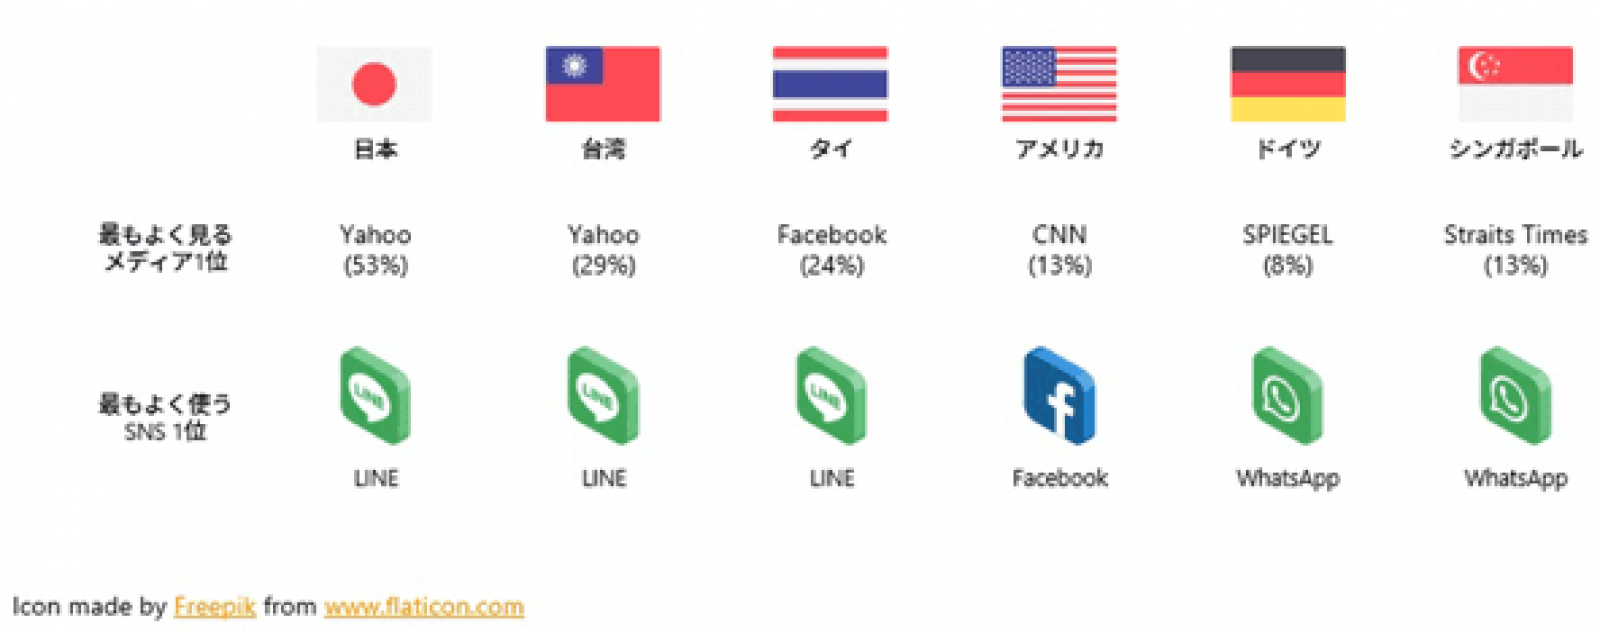 世界6カ国でよく使われるsnsはline Facebook Whatsappが3強 カーツメディアワークス調べ Web担当者forum